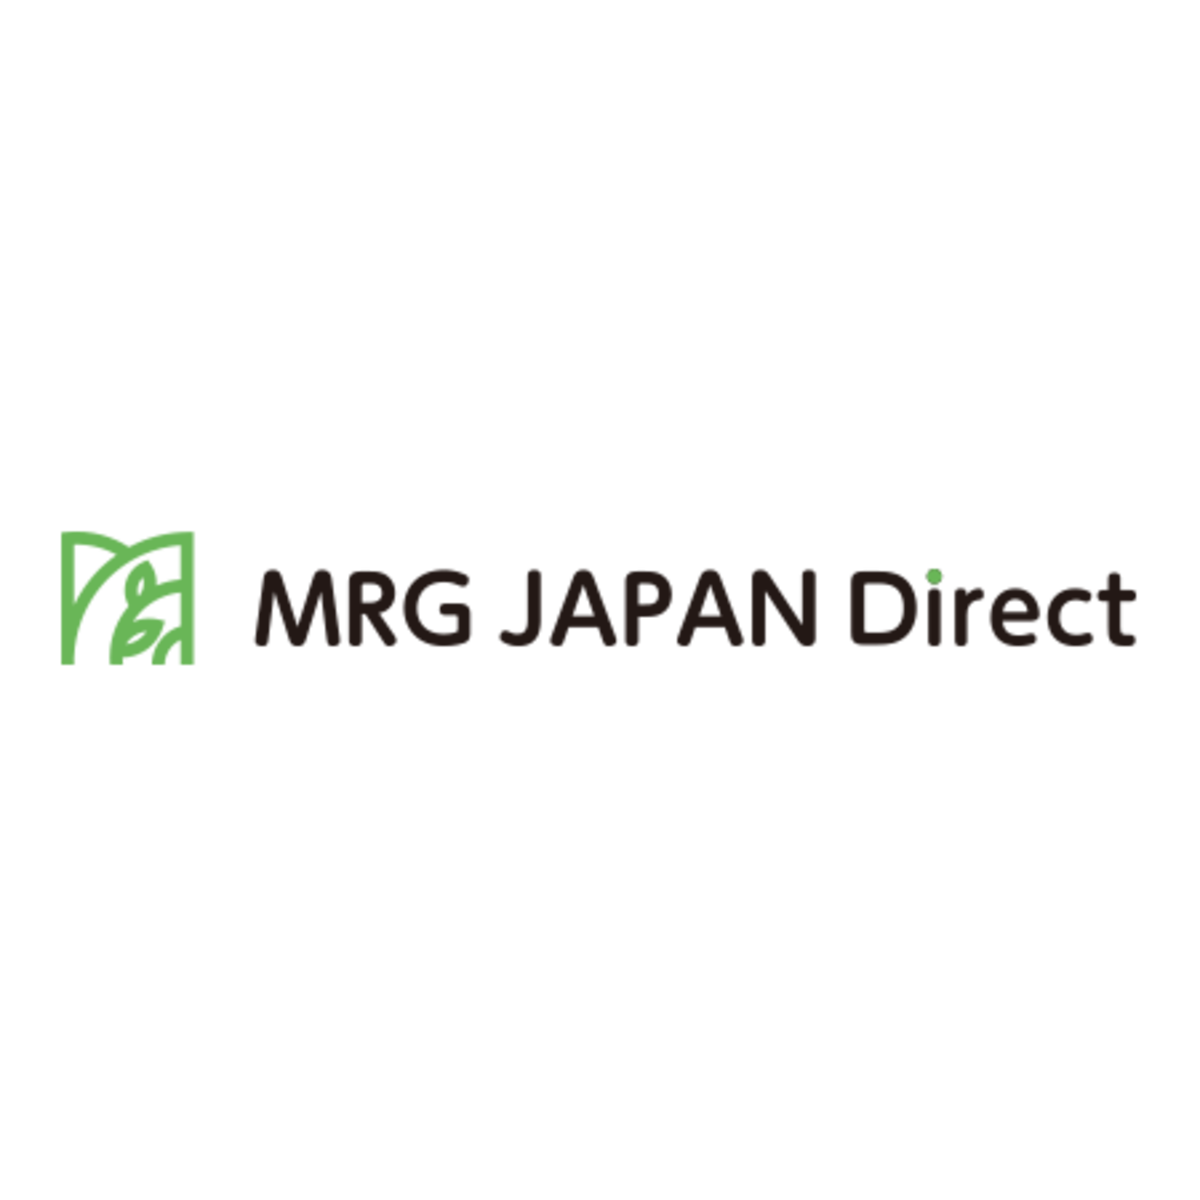 フィットネス | MRG JAPAN Direct